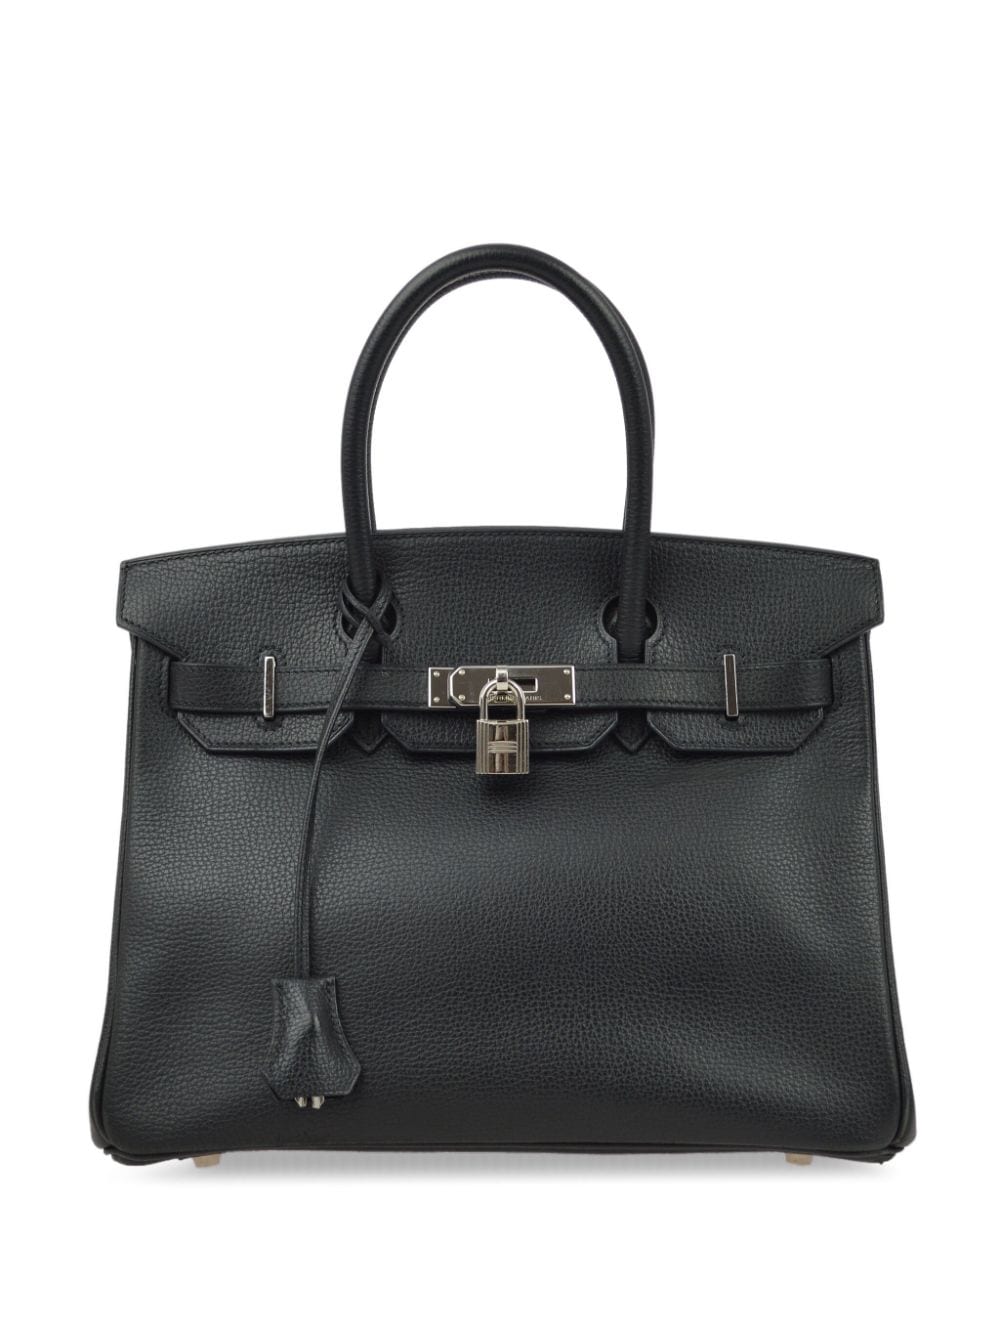 Pre-owned Hermes 2006 Birkin 30 Handbag In Black